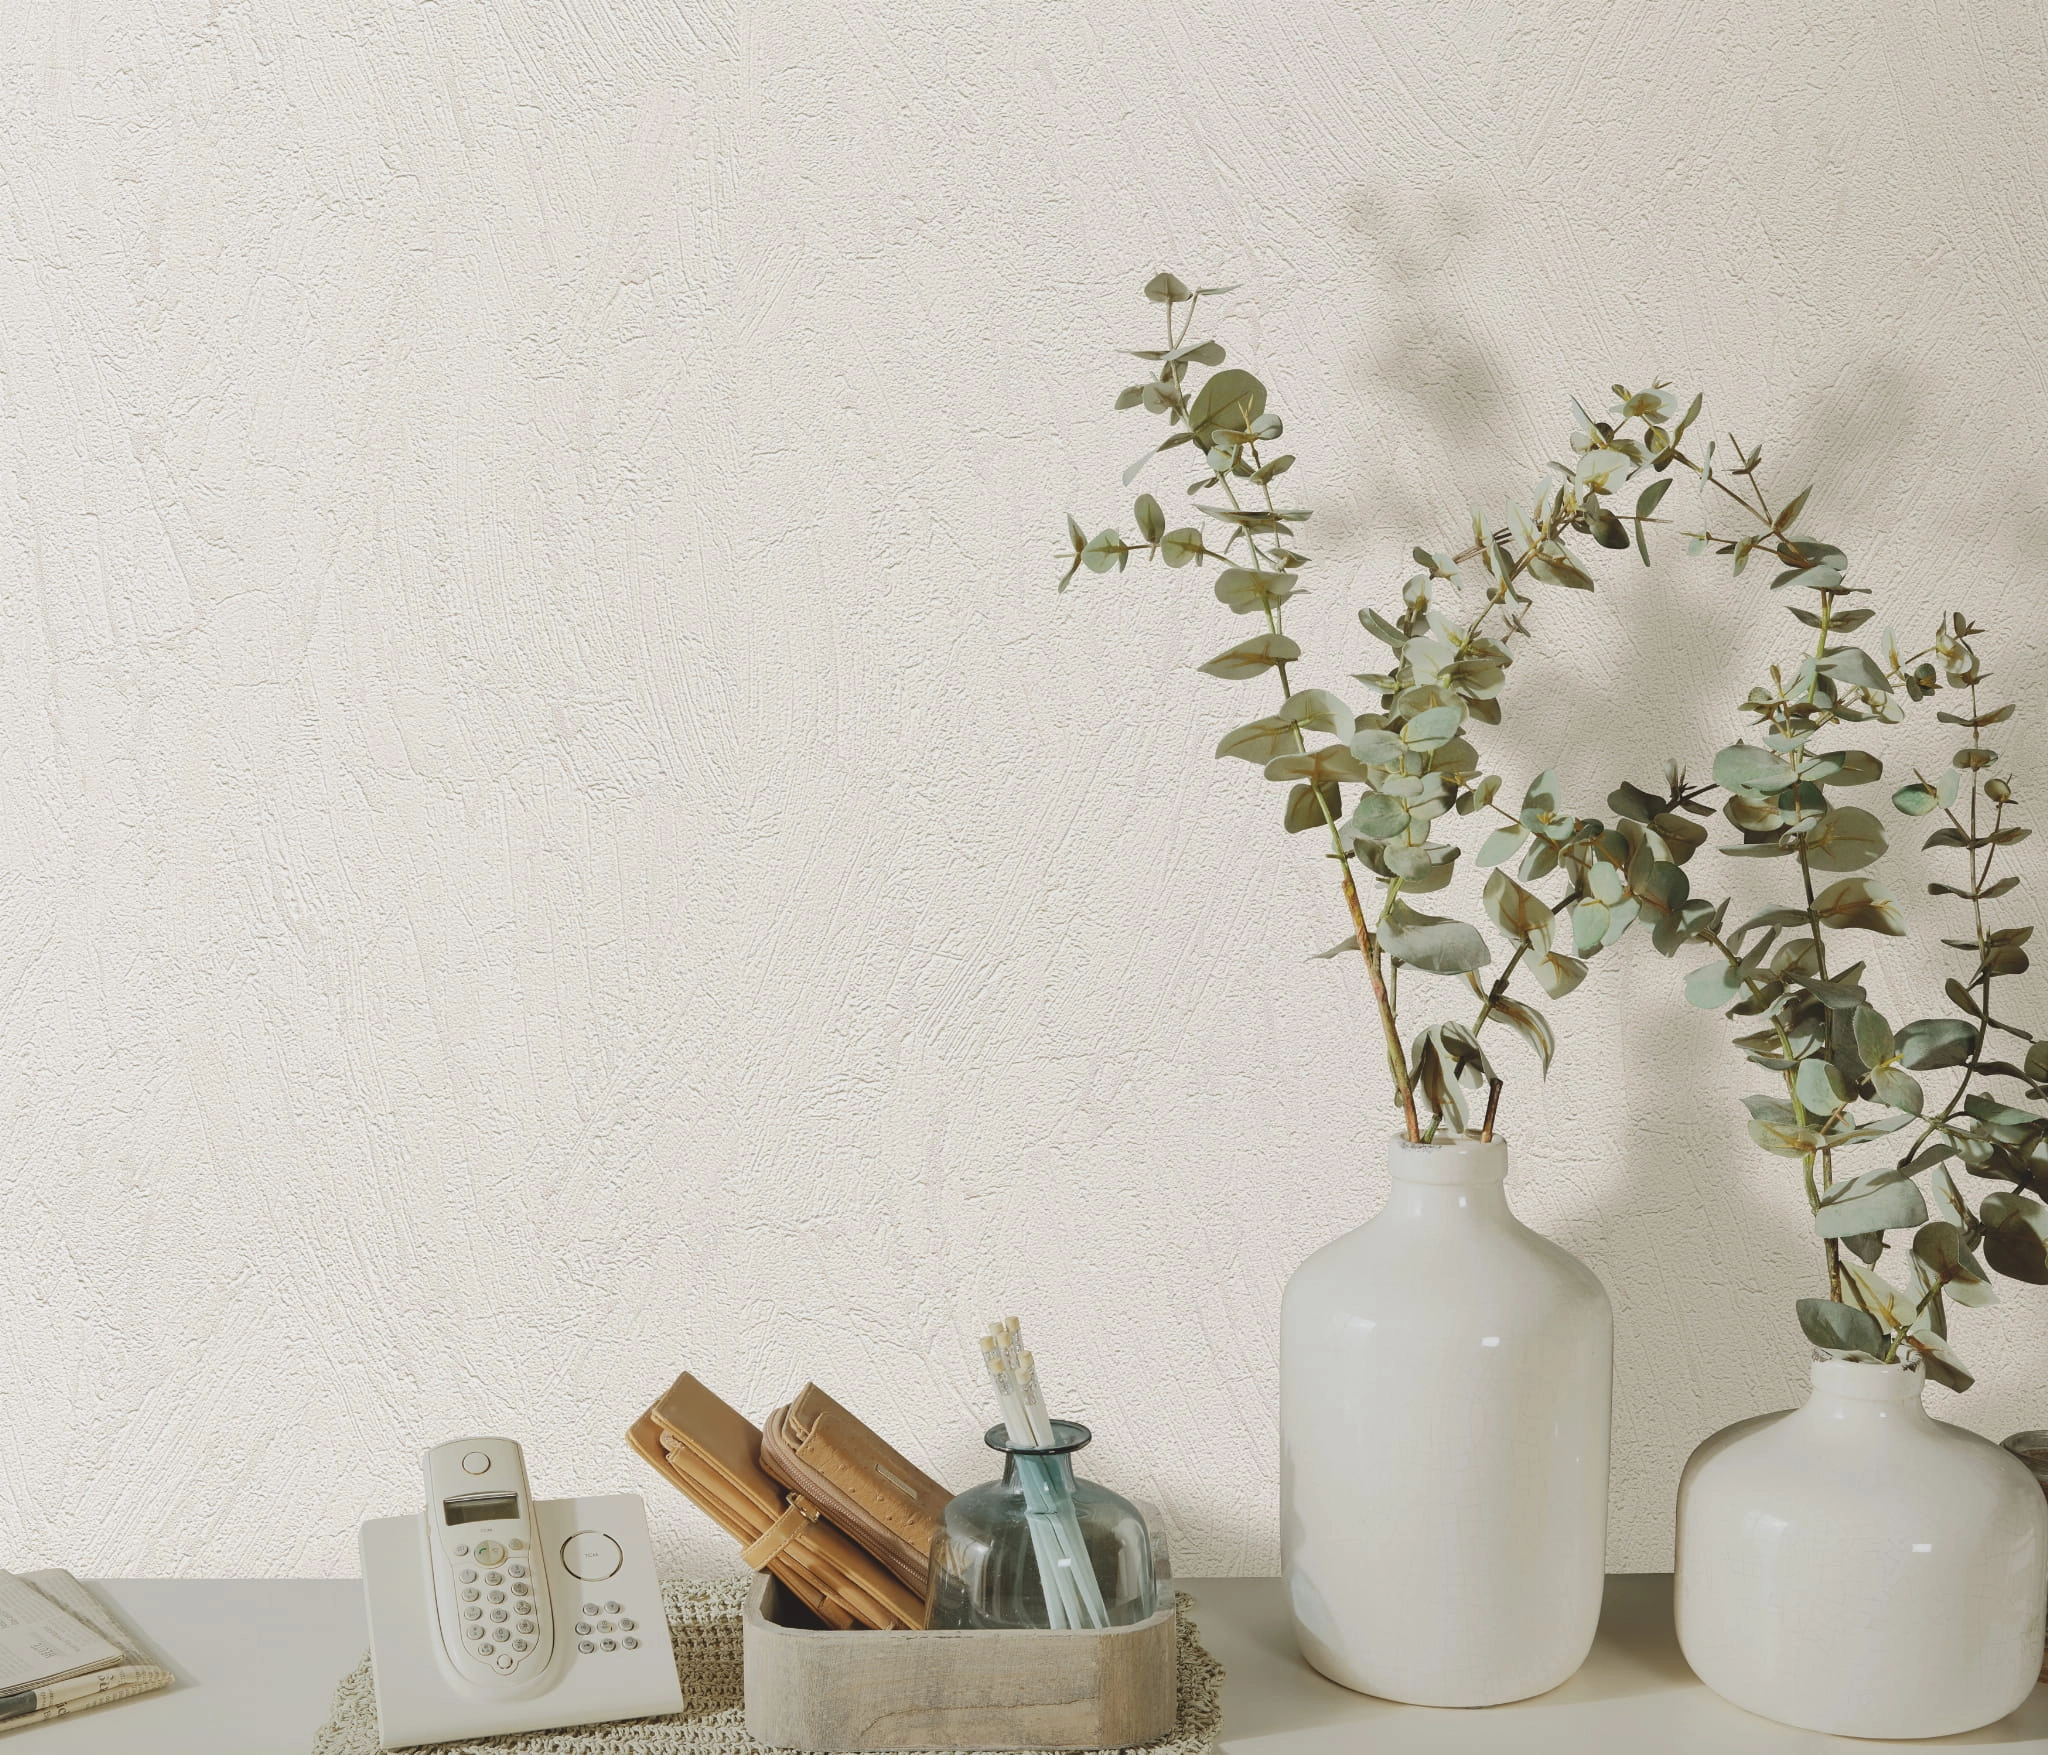 Loft hatású krém fehér színű kő mintázatú design tapéta